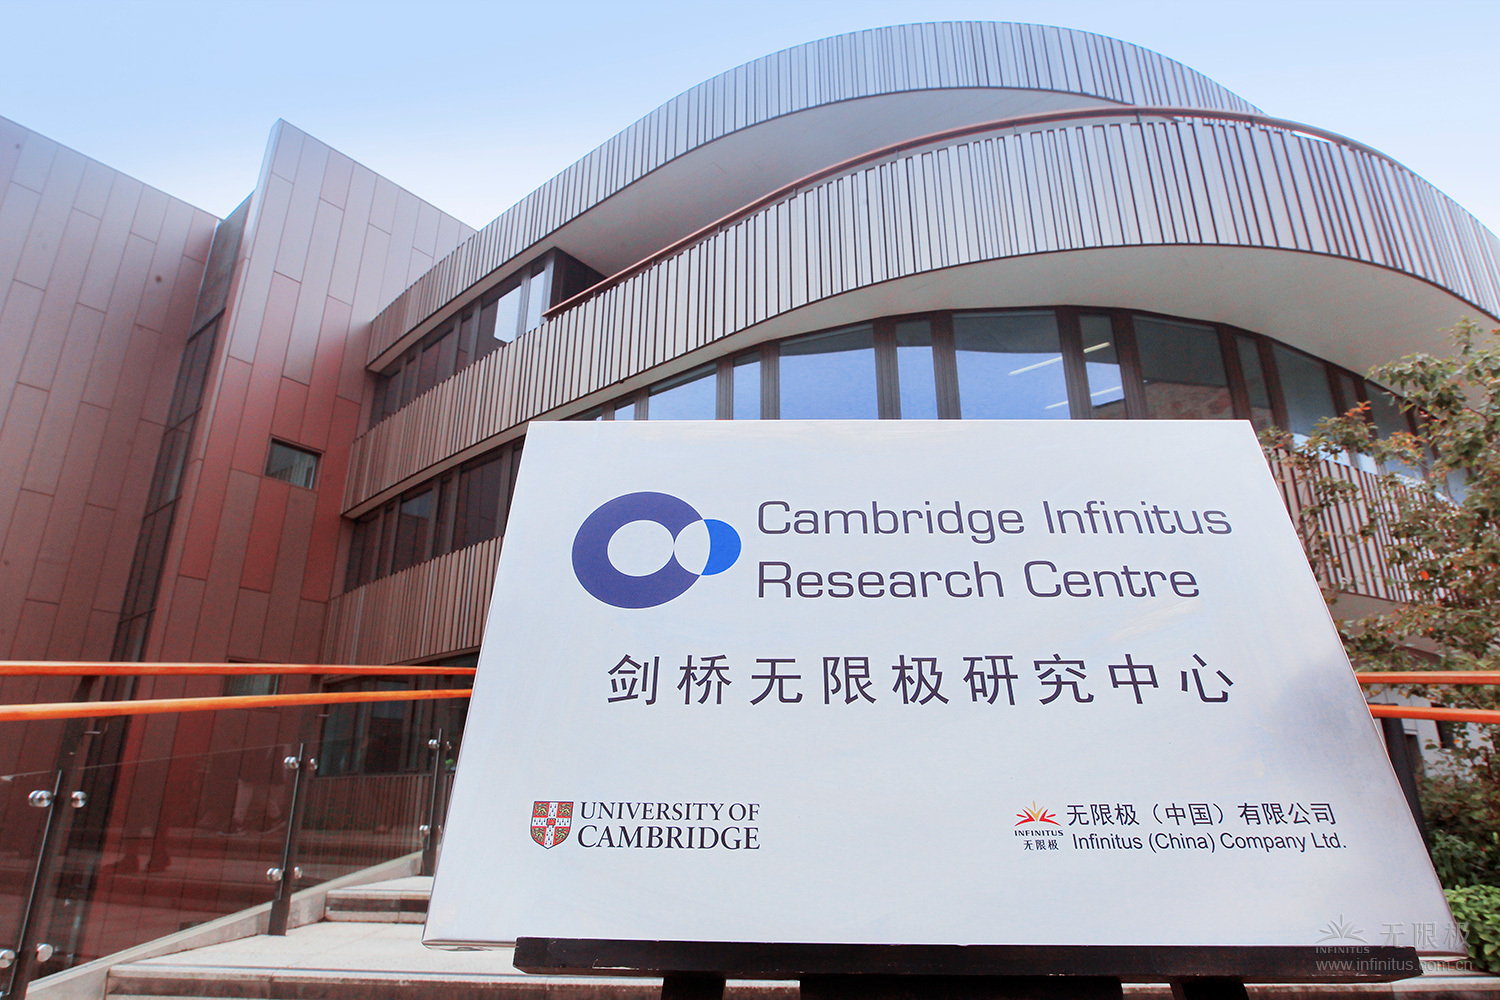 （替换）无限极与英国剑桥大学共建的“剑桥无限极研究中心”。